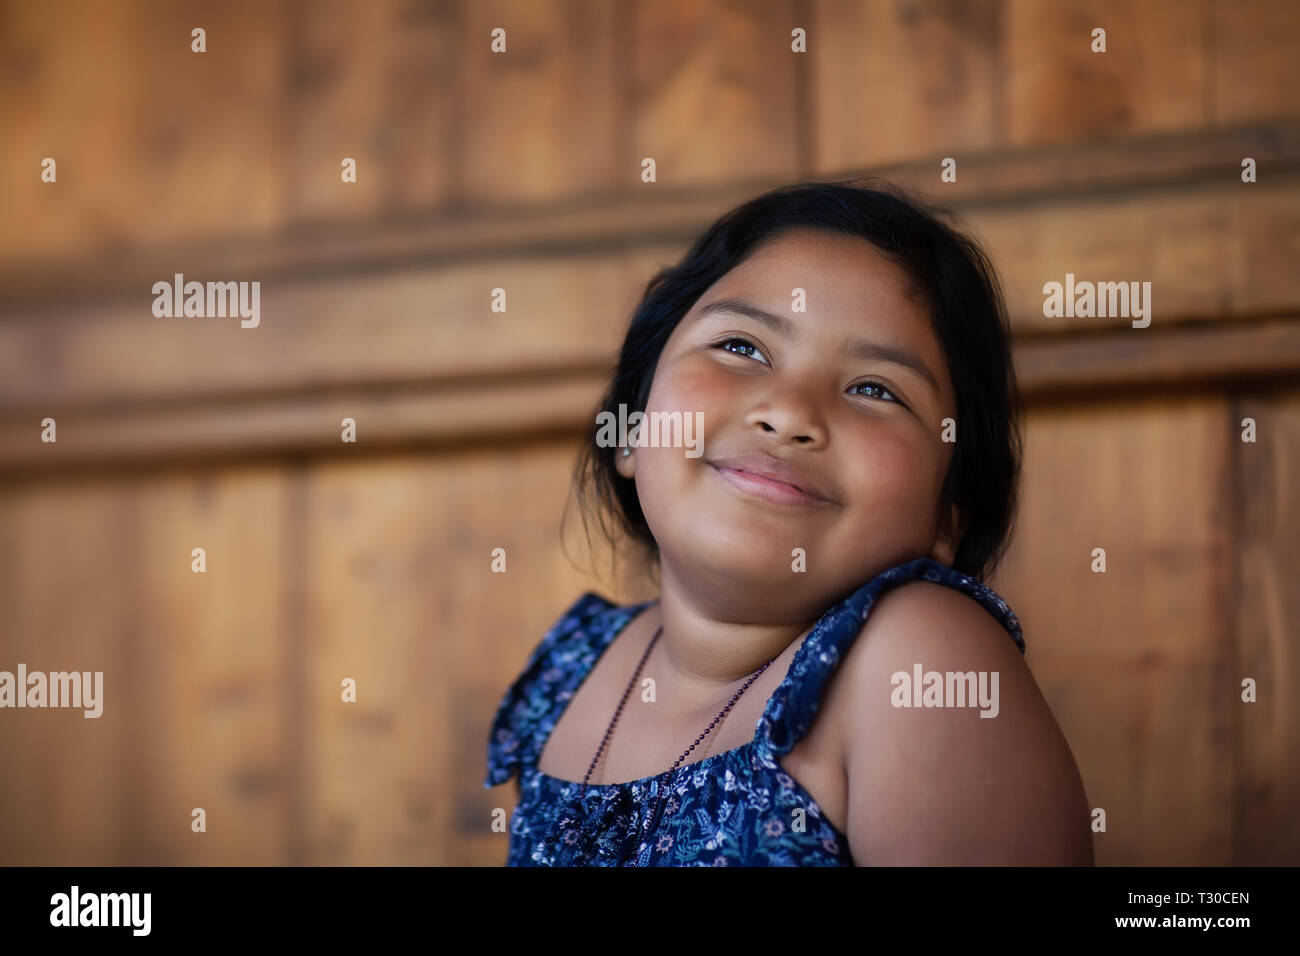 Giovane ragazza etnica di ricordare un momento felice nella sua mente e di esprimere la gioia attraverso un sorriso e gli occhi luminosi. Foto Stock